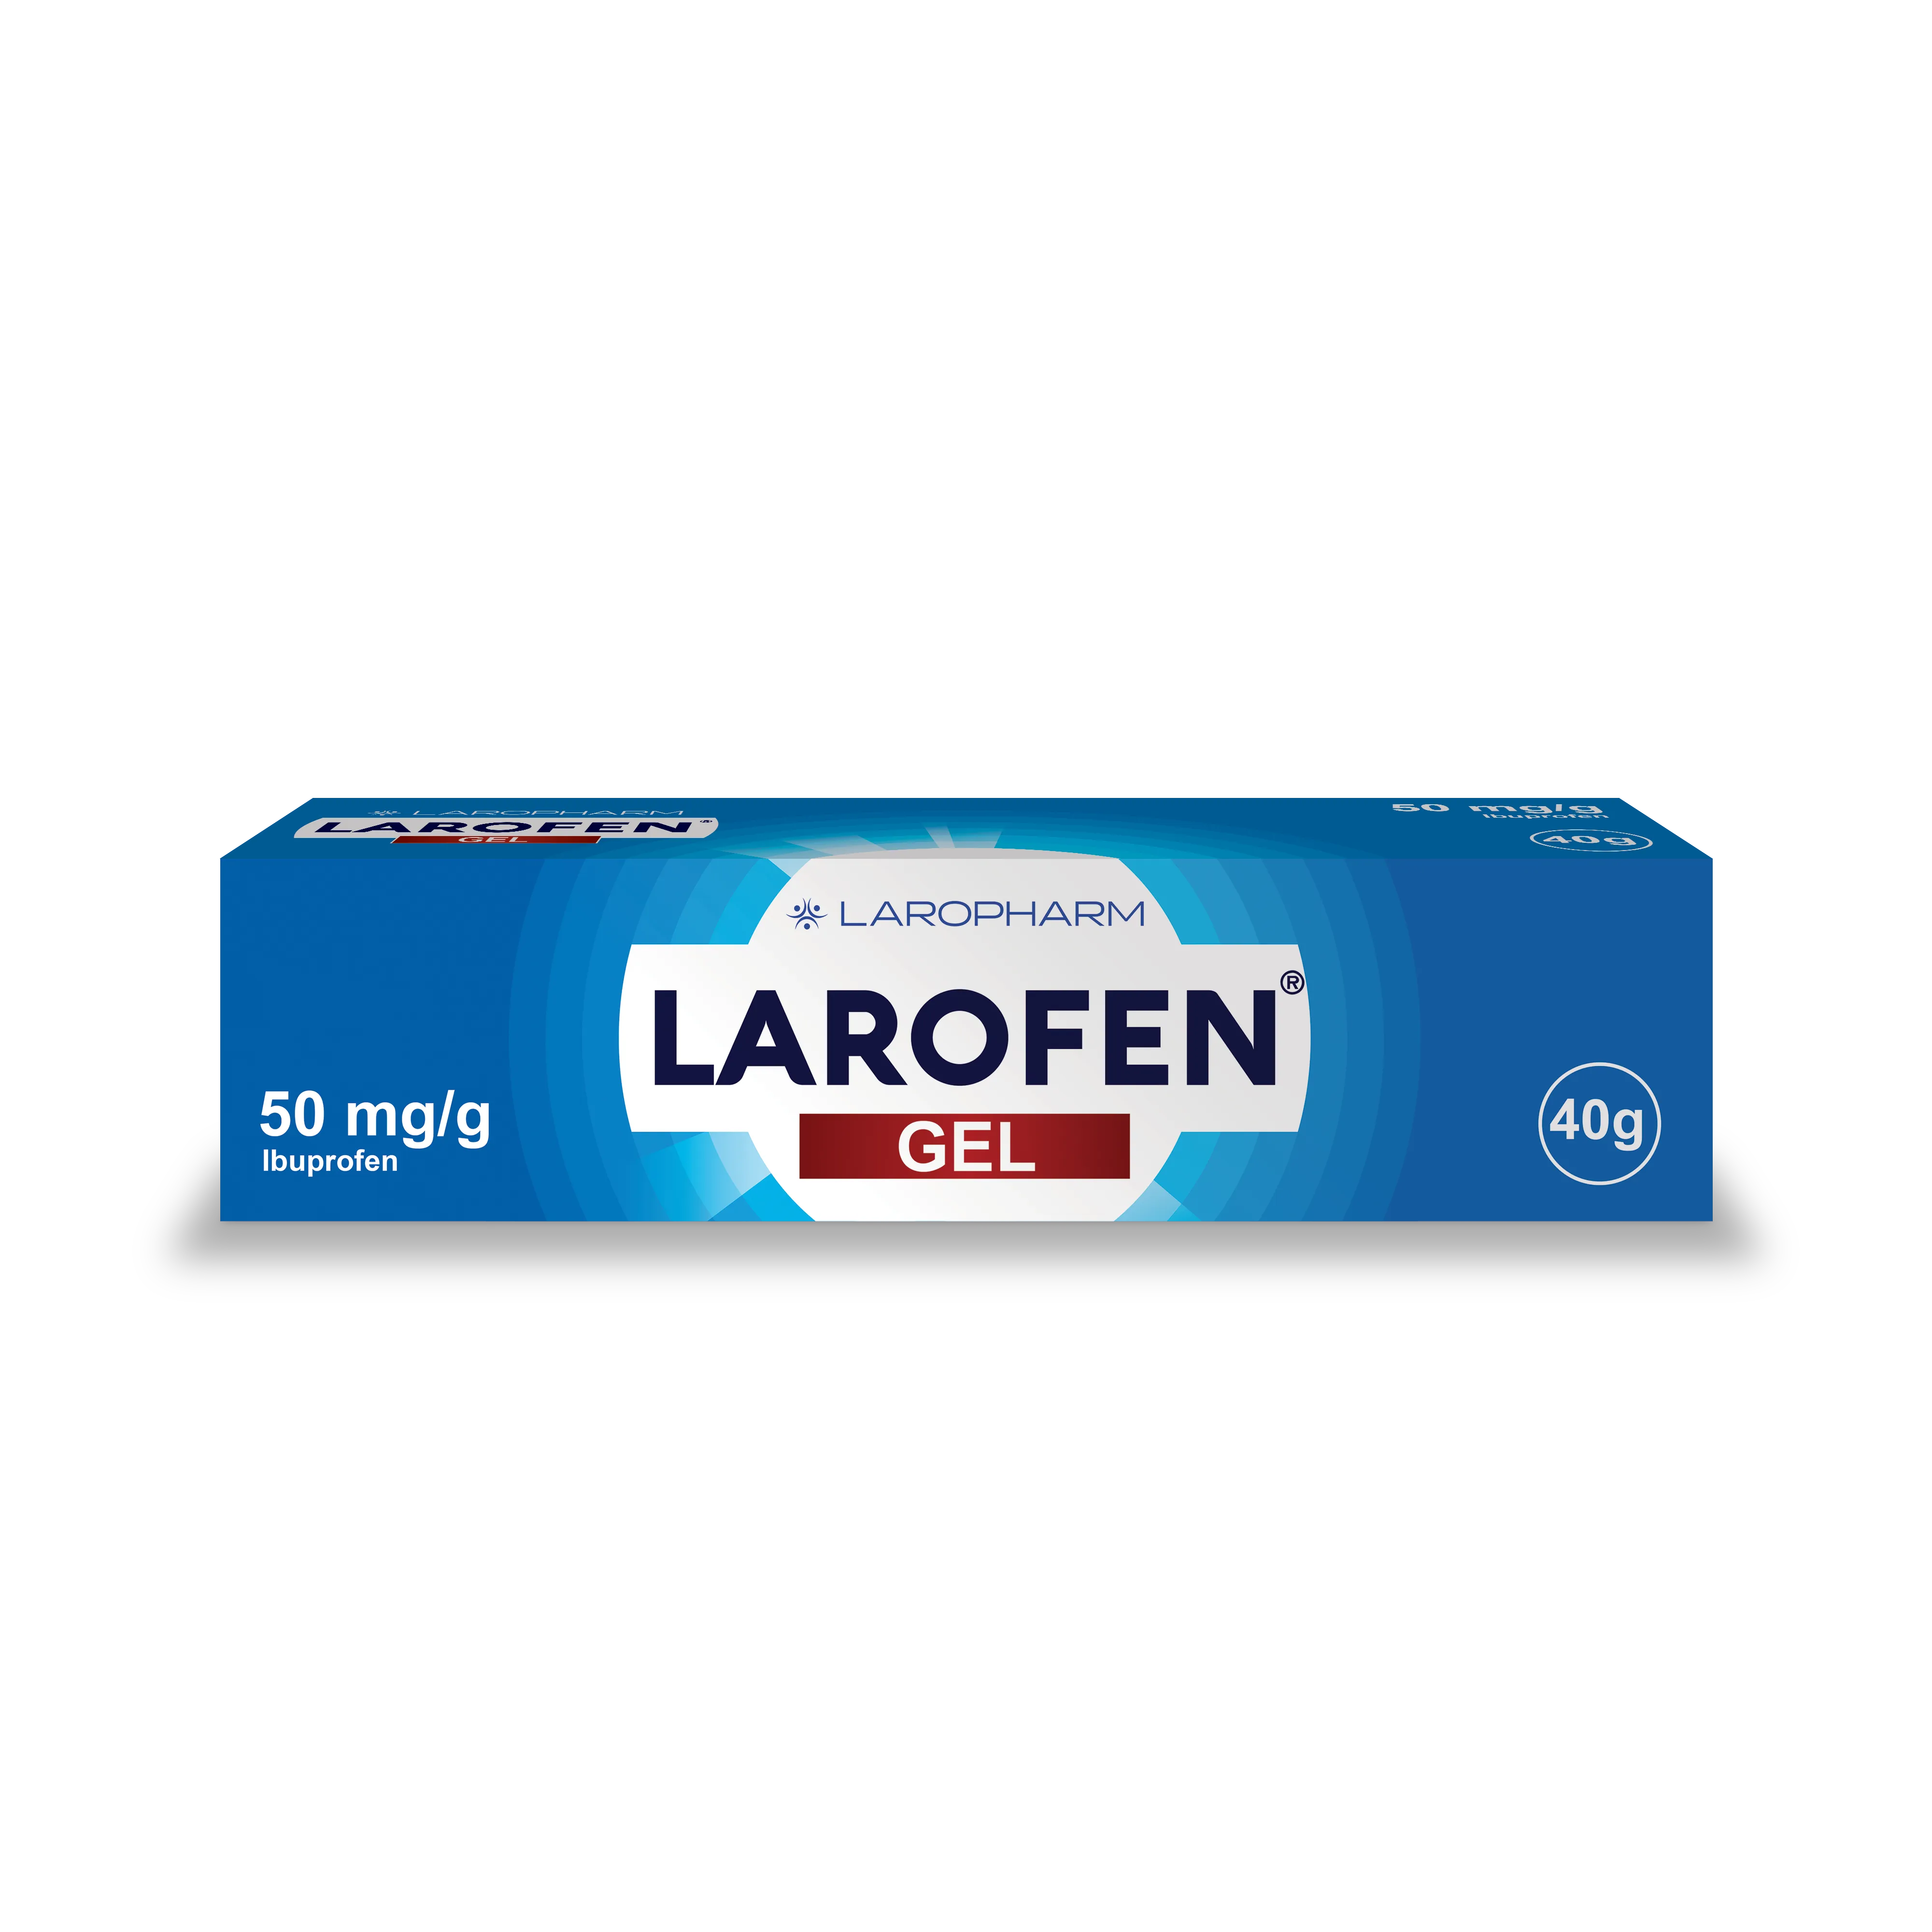 Larofen Gel 50mg/g 40g